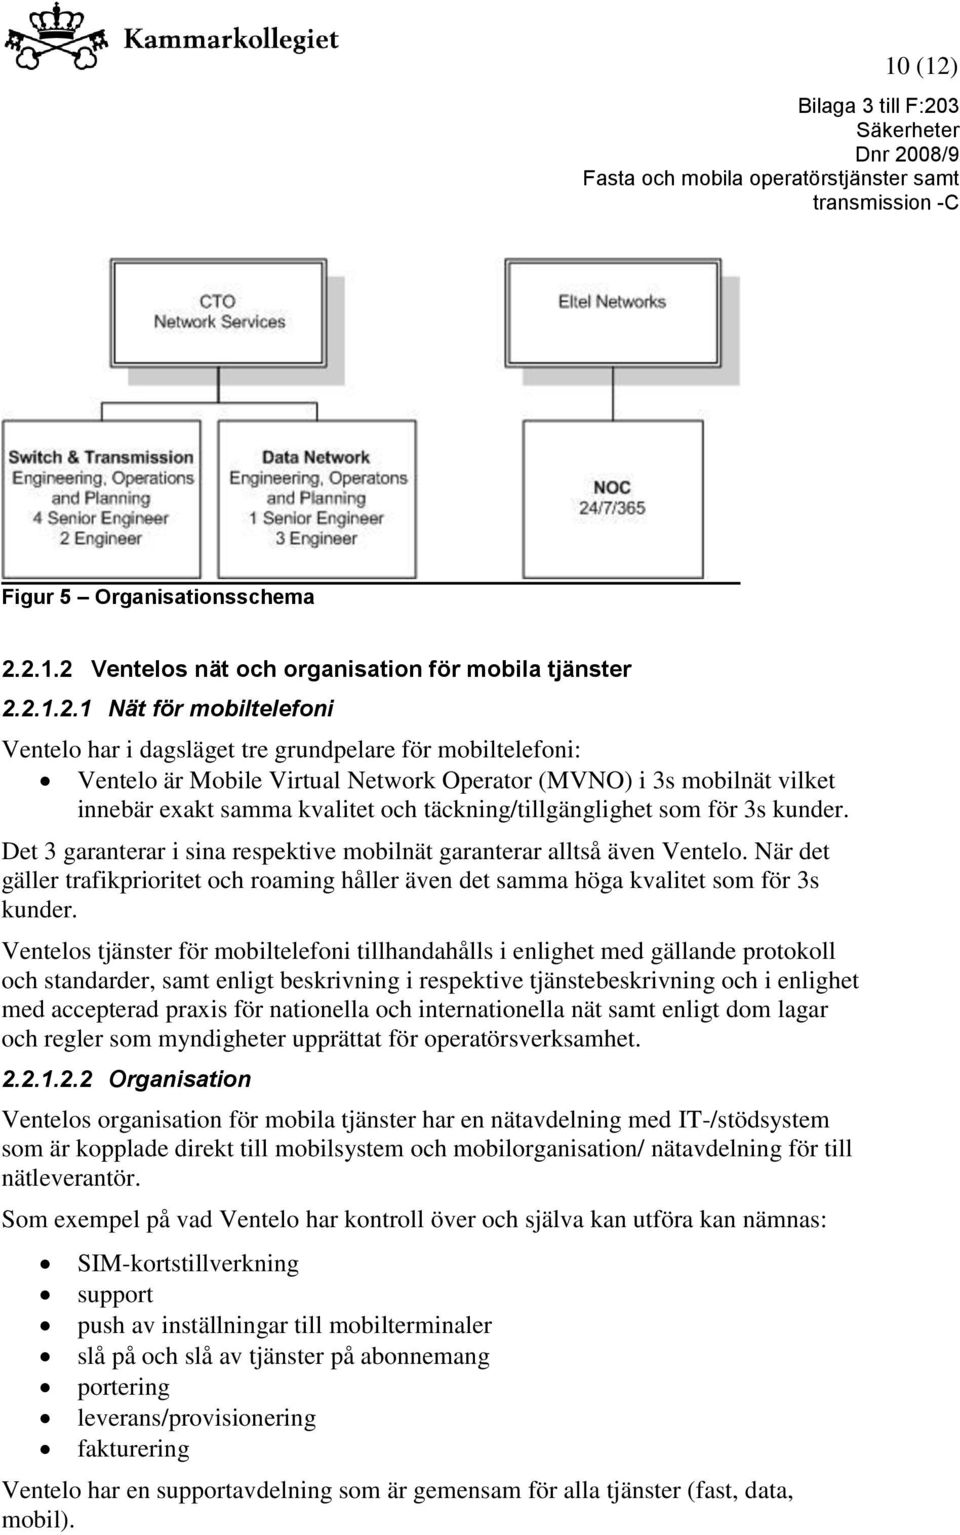 2.1.2 Ventelos nät och organisation för mobila tjänster 2.2.1.2.1 Nät för mobiltelefoni Ventelo har i dagsläget tre grundpelare för mobiltelefoni: Ventelo är Mobile Virtual Network Operator (MVNO) i